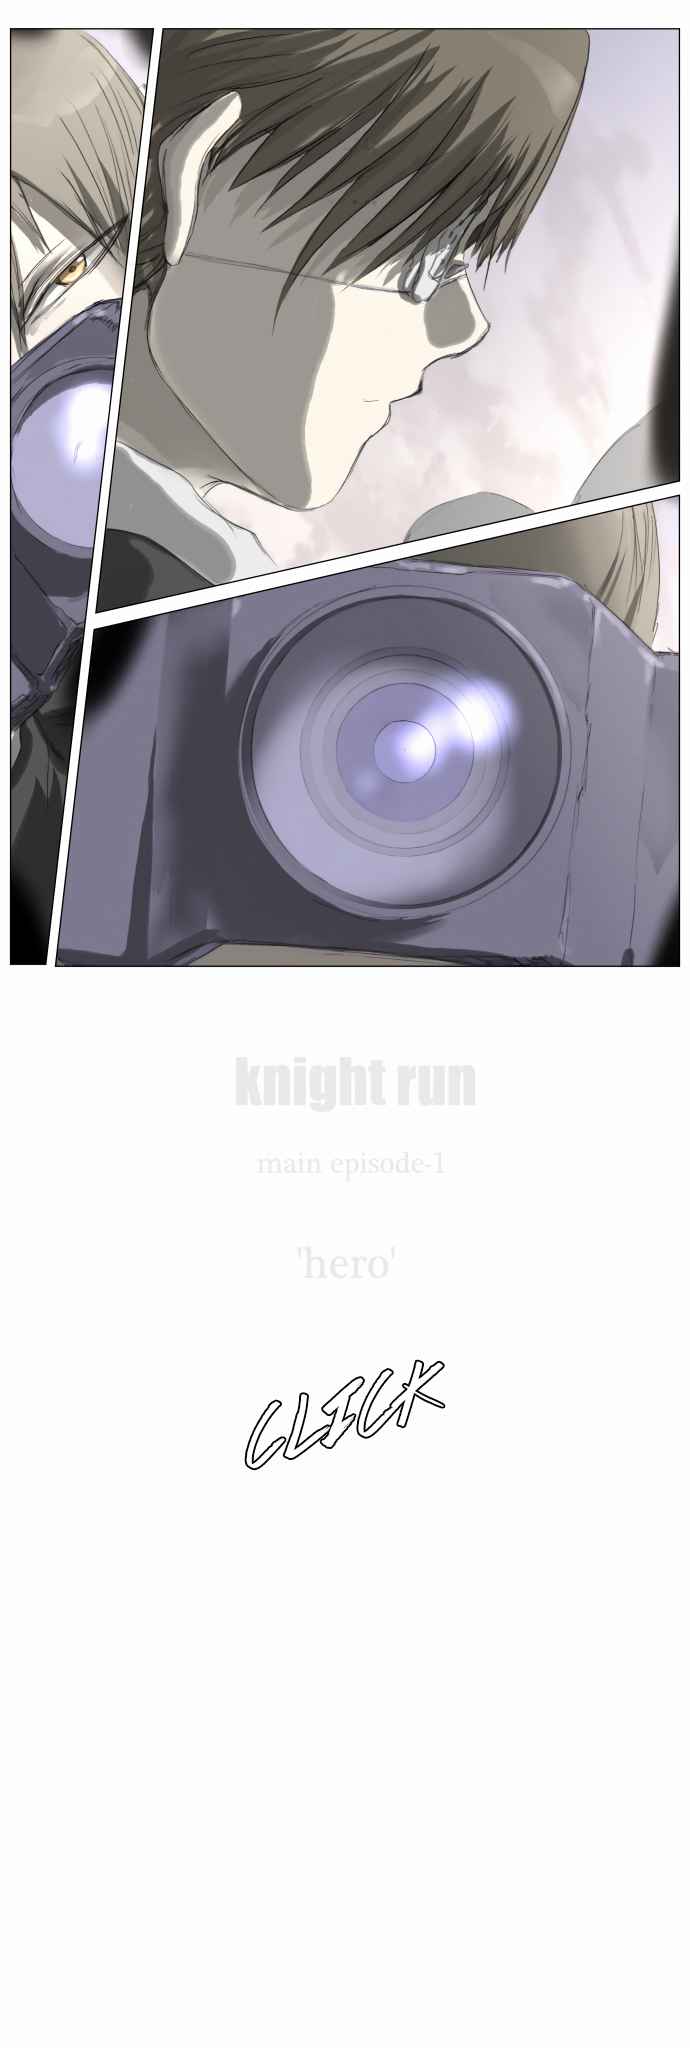 Knight Run Vol. 3 Ch. 191 Hero Part 22 | End